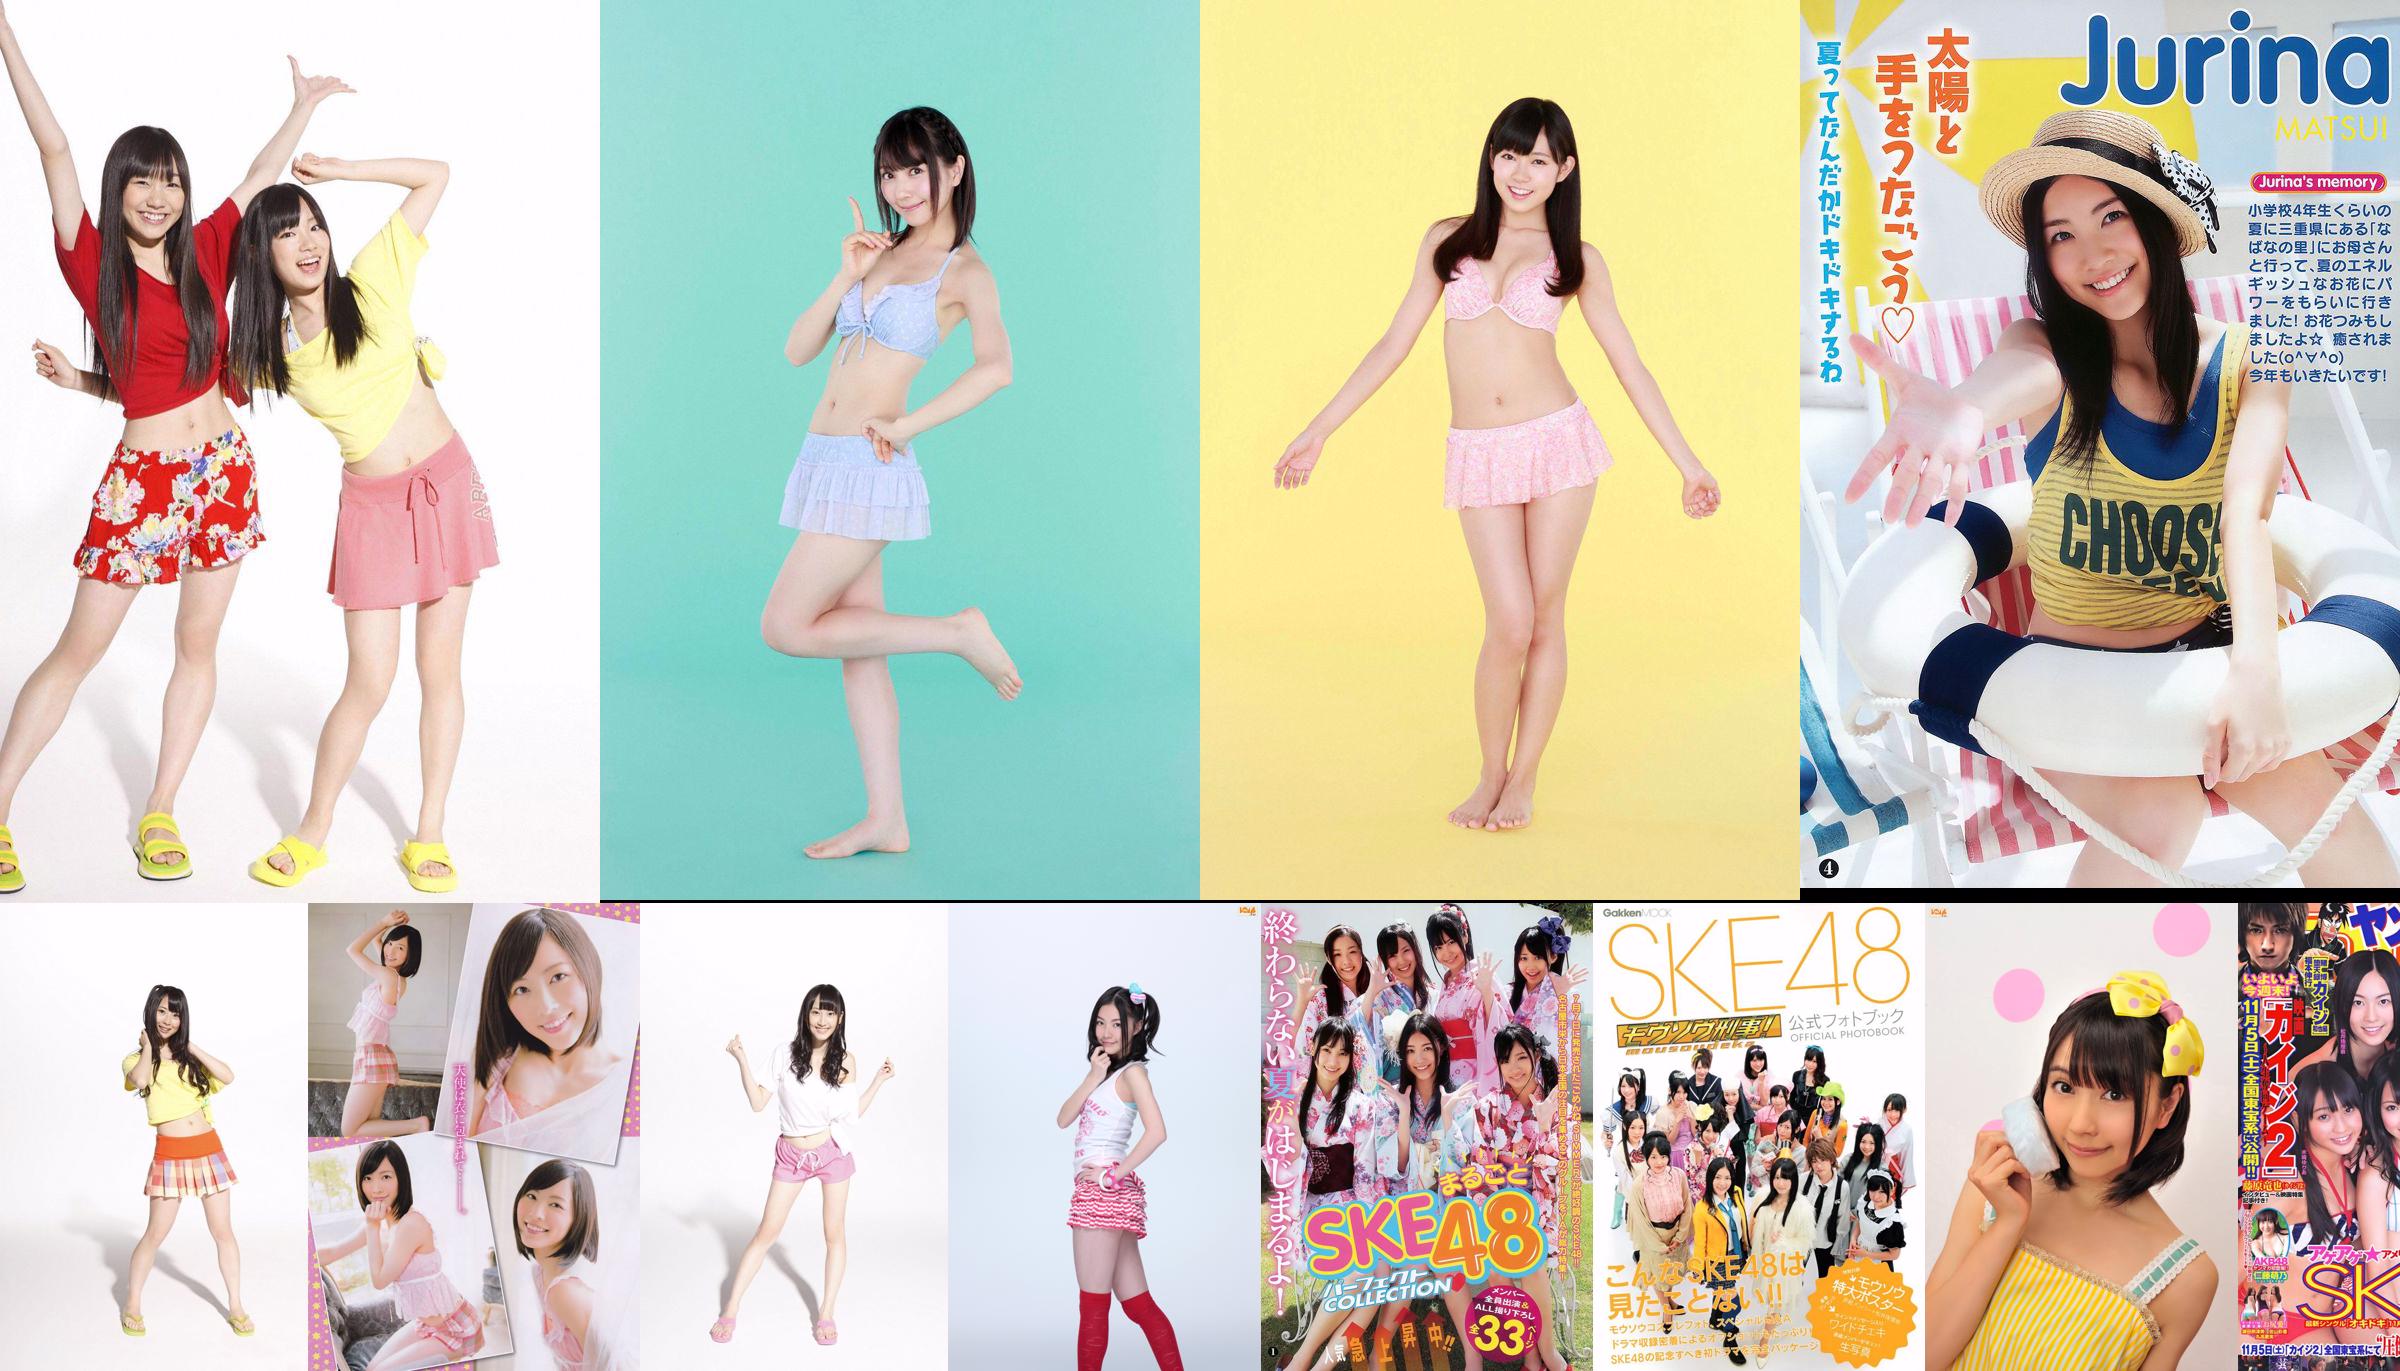 SKE48 Aikari Tree, Yoshioka Riho, Sariyama Mariko SAKURACO Tachibana Rin [Weekly Playboy] 2014 No.32 Photo Magazine No.91f53e Page 3